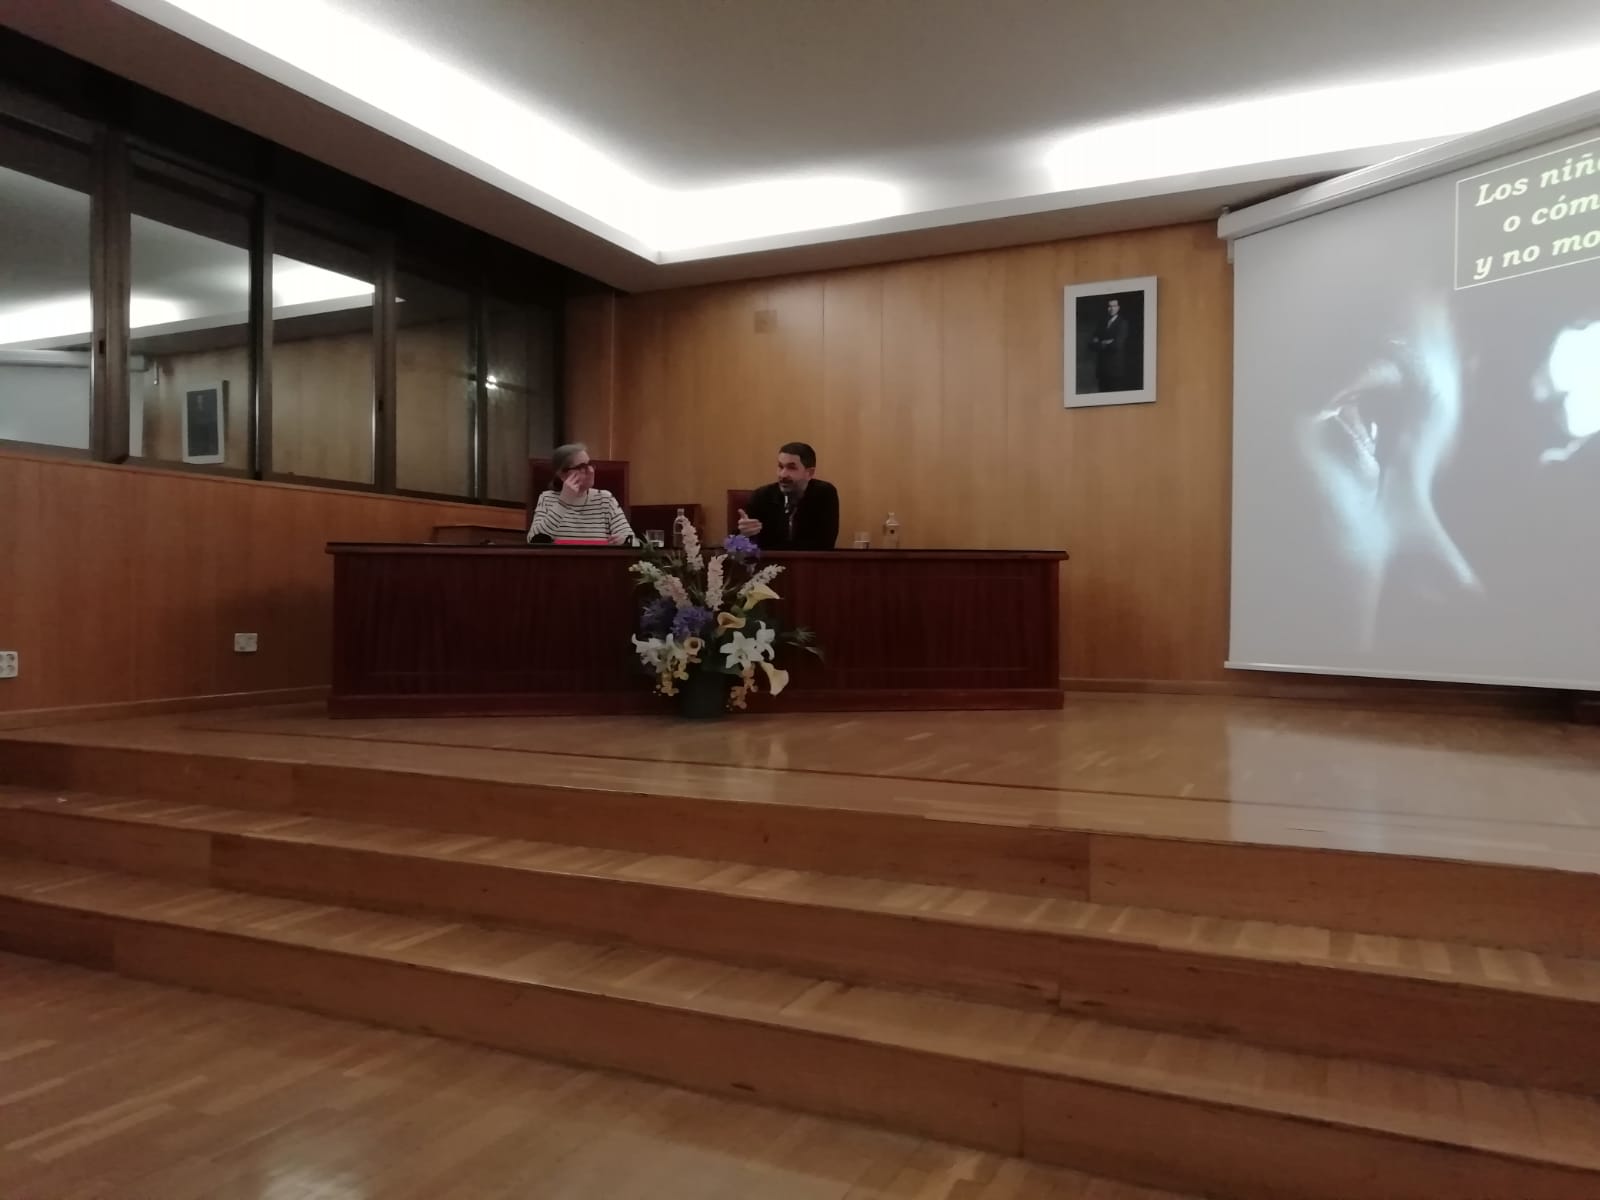 Imagen en la que se ve al profesor Serafín Béjar y a la ponente Ianire Angulo sentados durante la conferencia "Si no os hacéis como niños", a la derecha de ellos se puede observar una pantalla de proyección